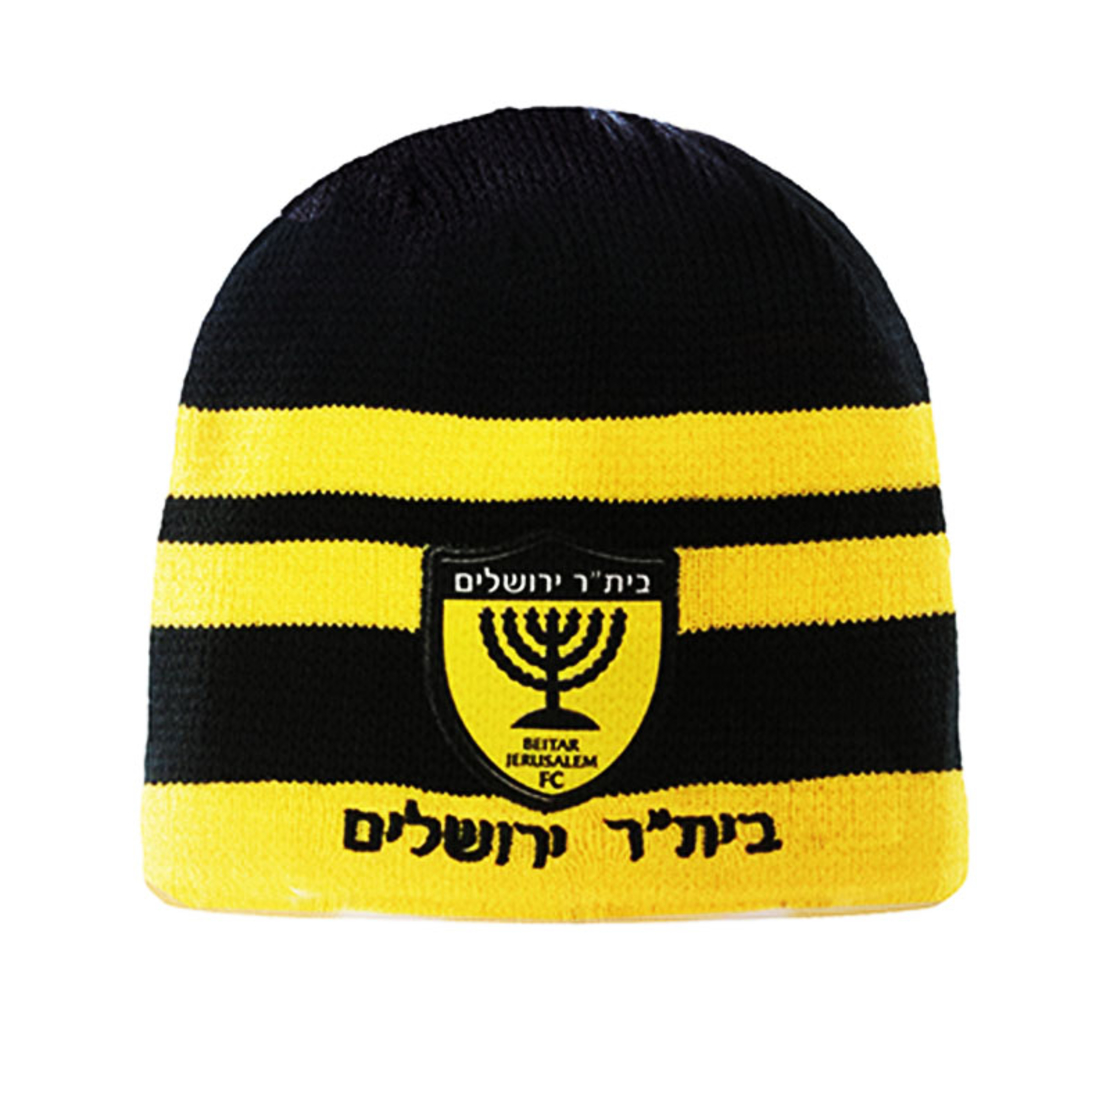 כובע חורף ביתר ירושלים